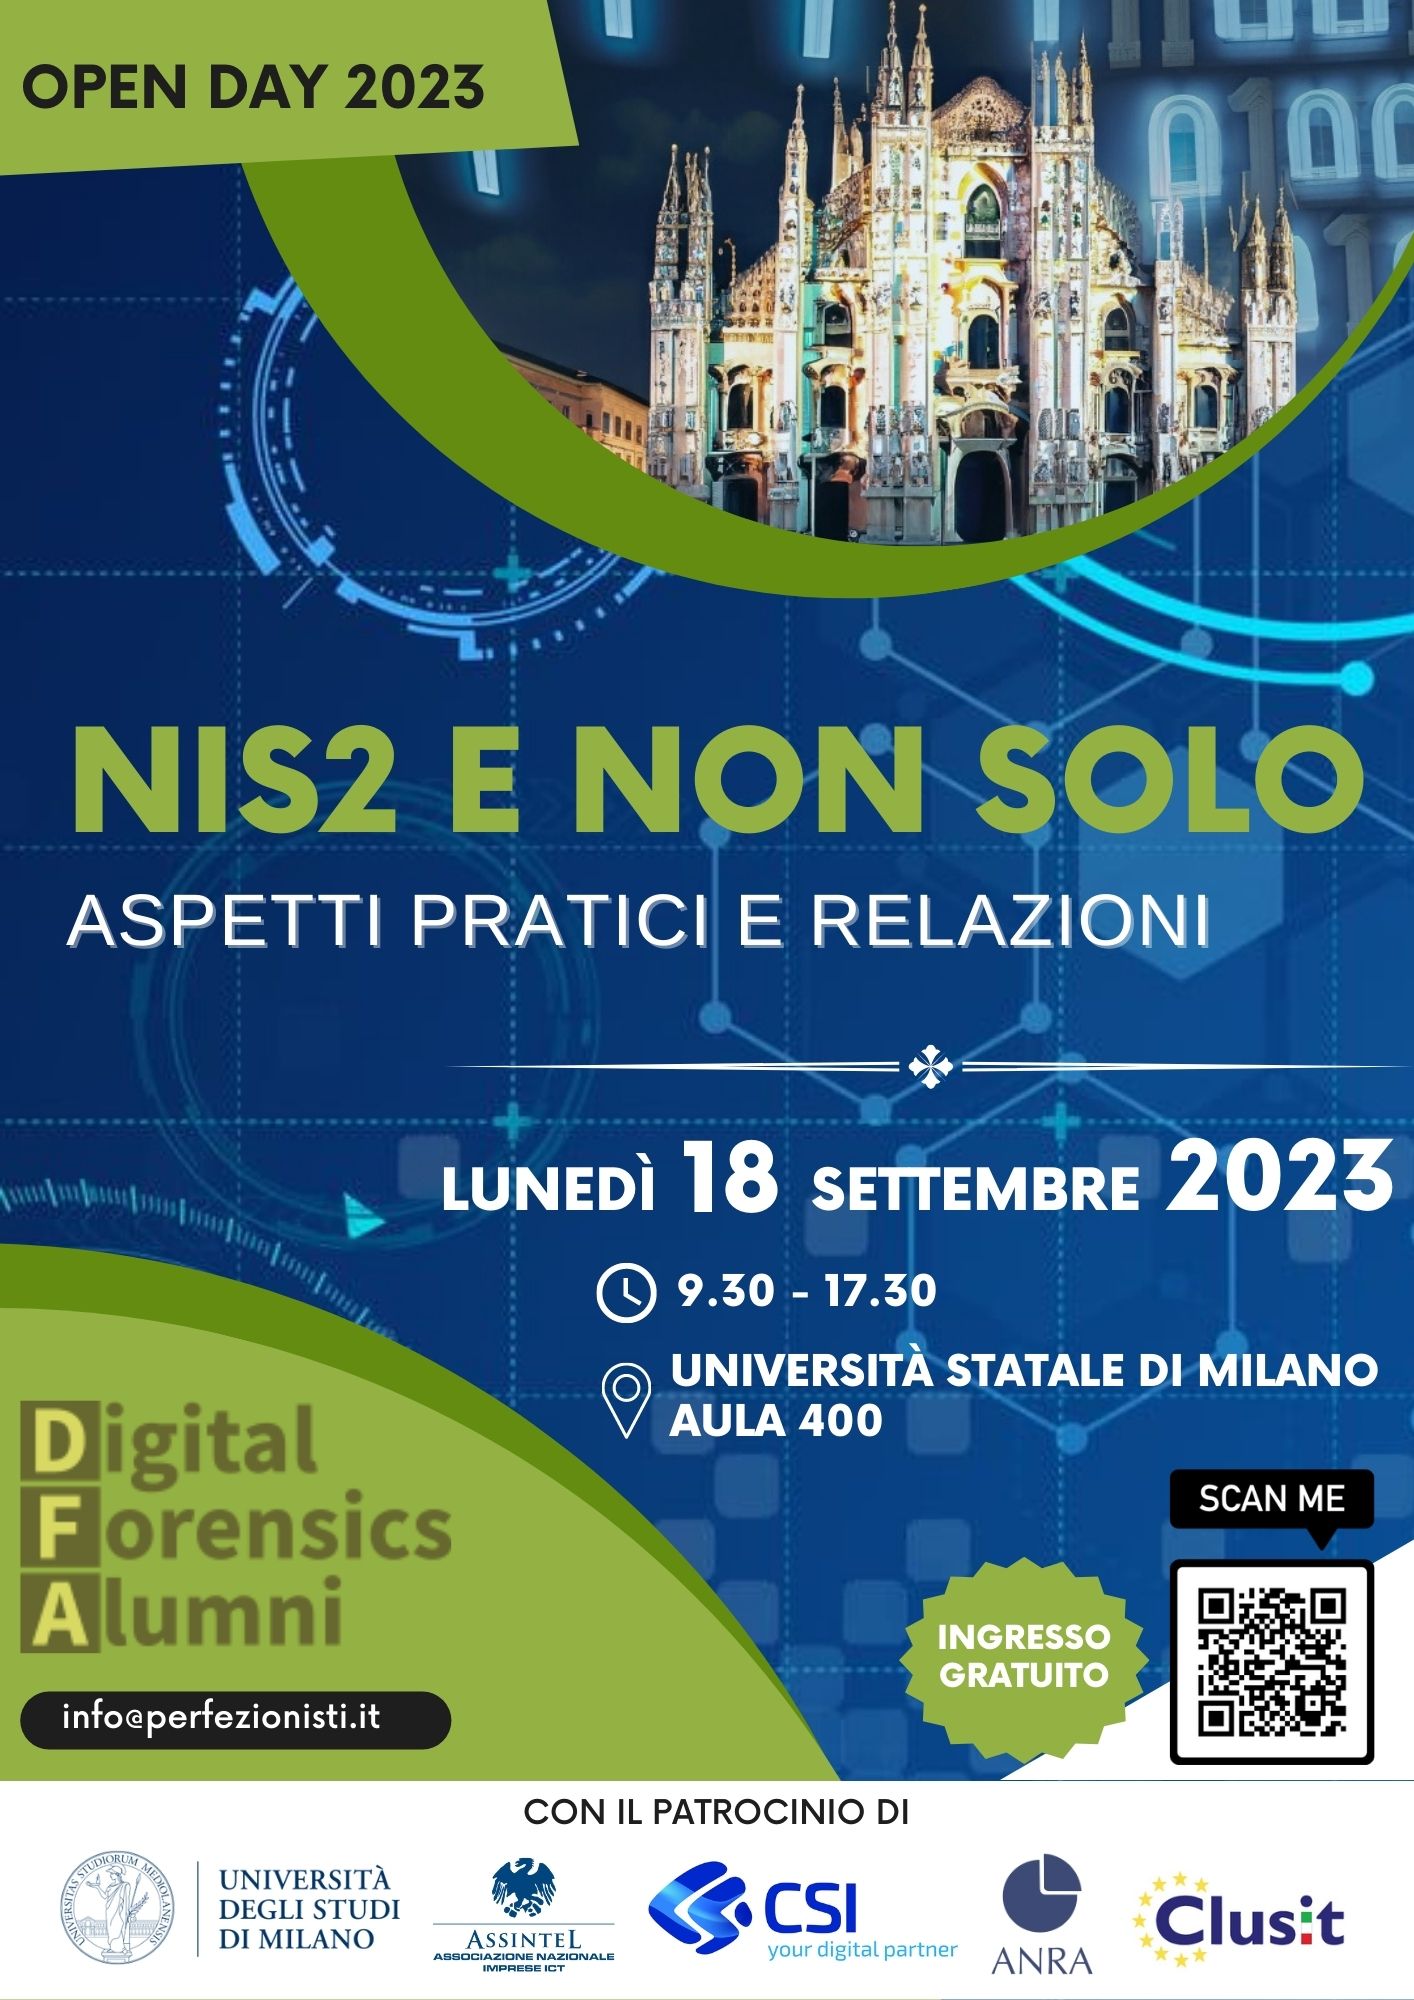 Andrea Di Dio, CyberChess 2023, Beta hall (5 OCT) 